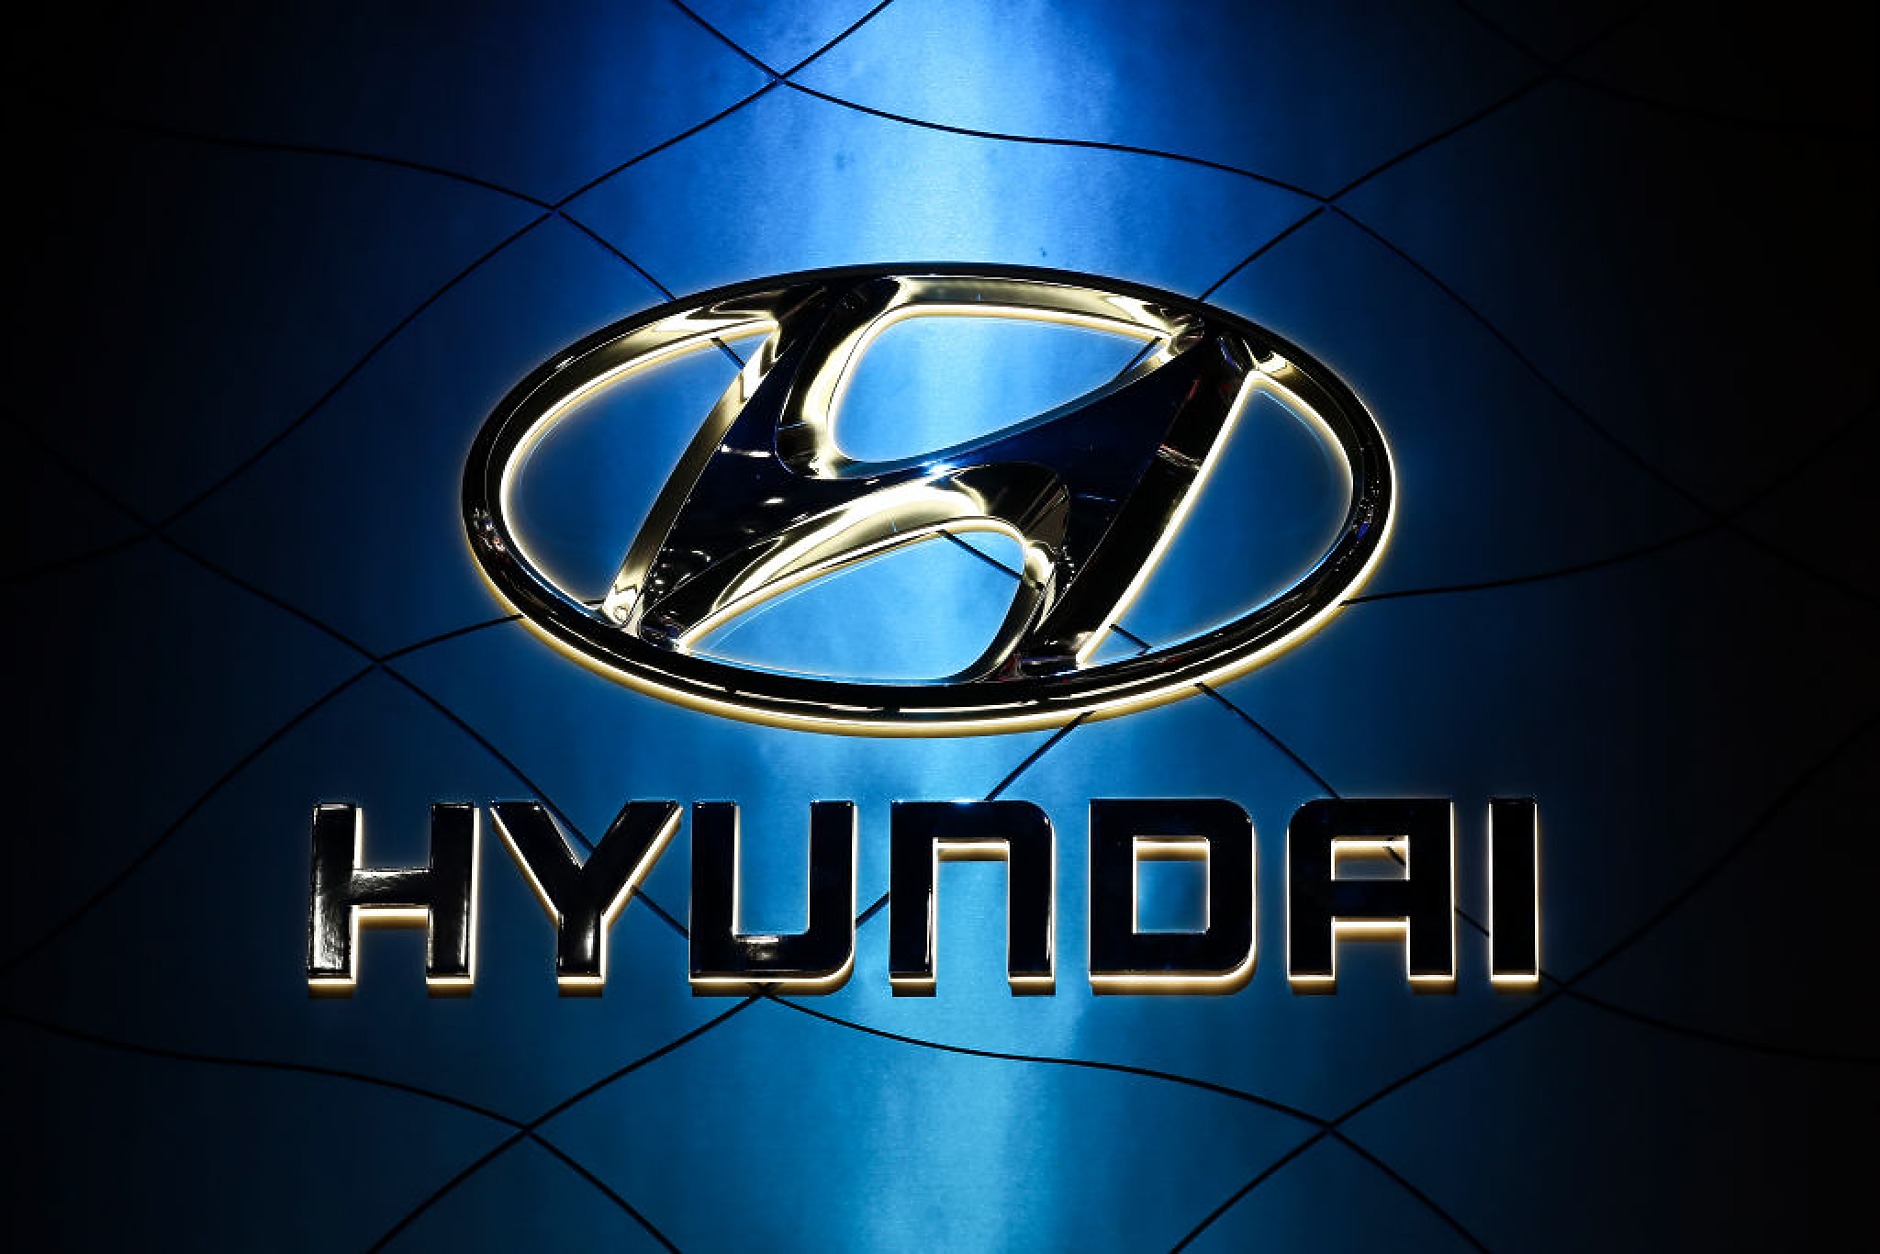 Hyundai ще строи завод за батерии за електрически превозни средства в САЩ